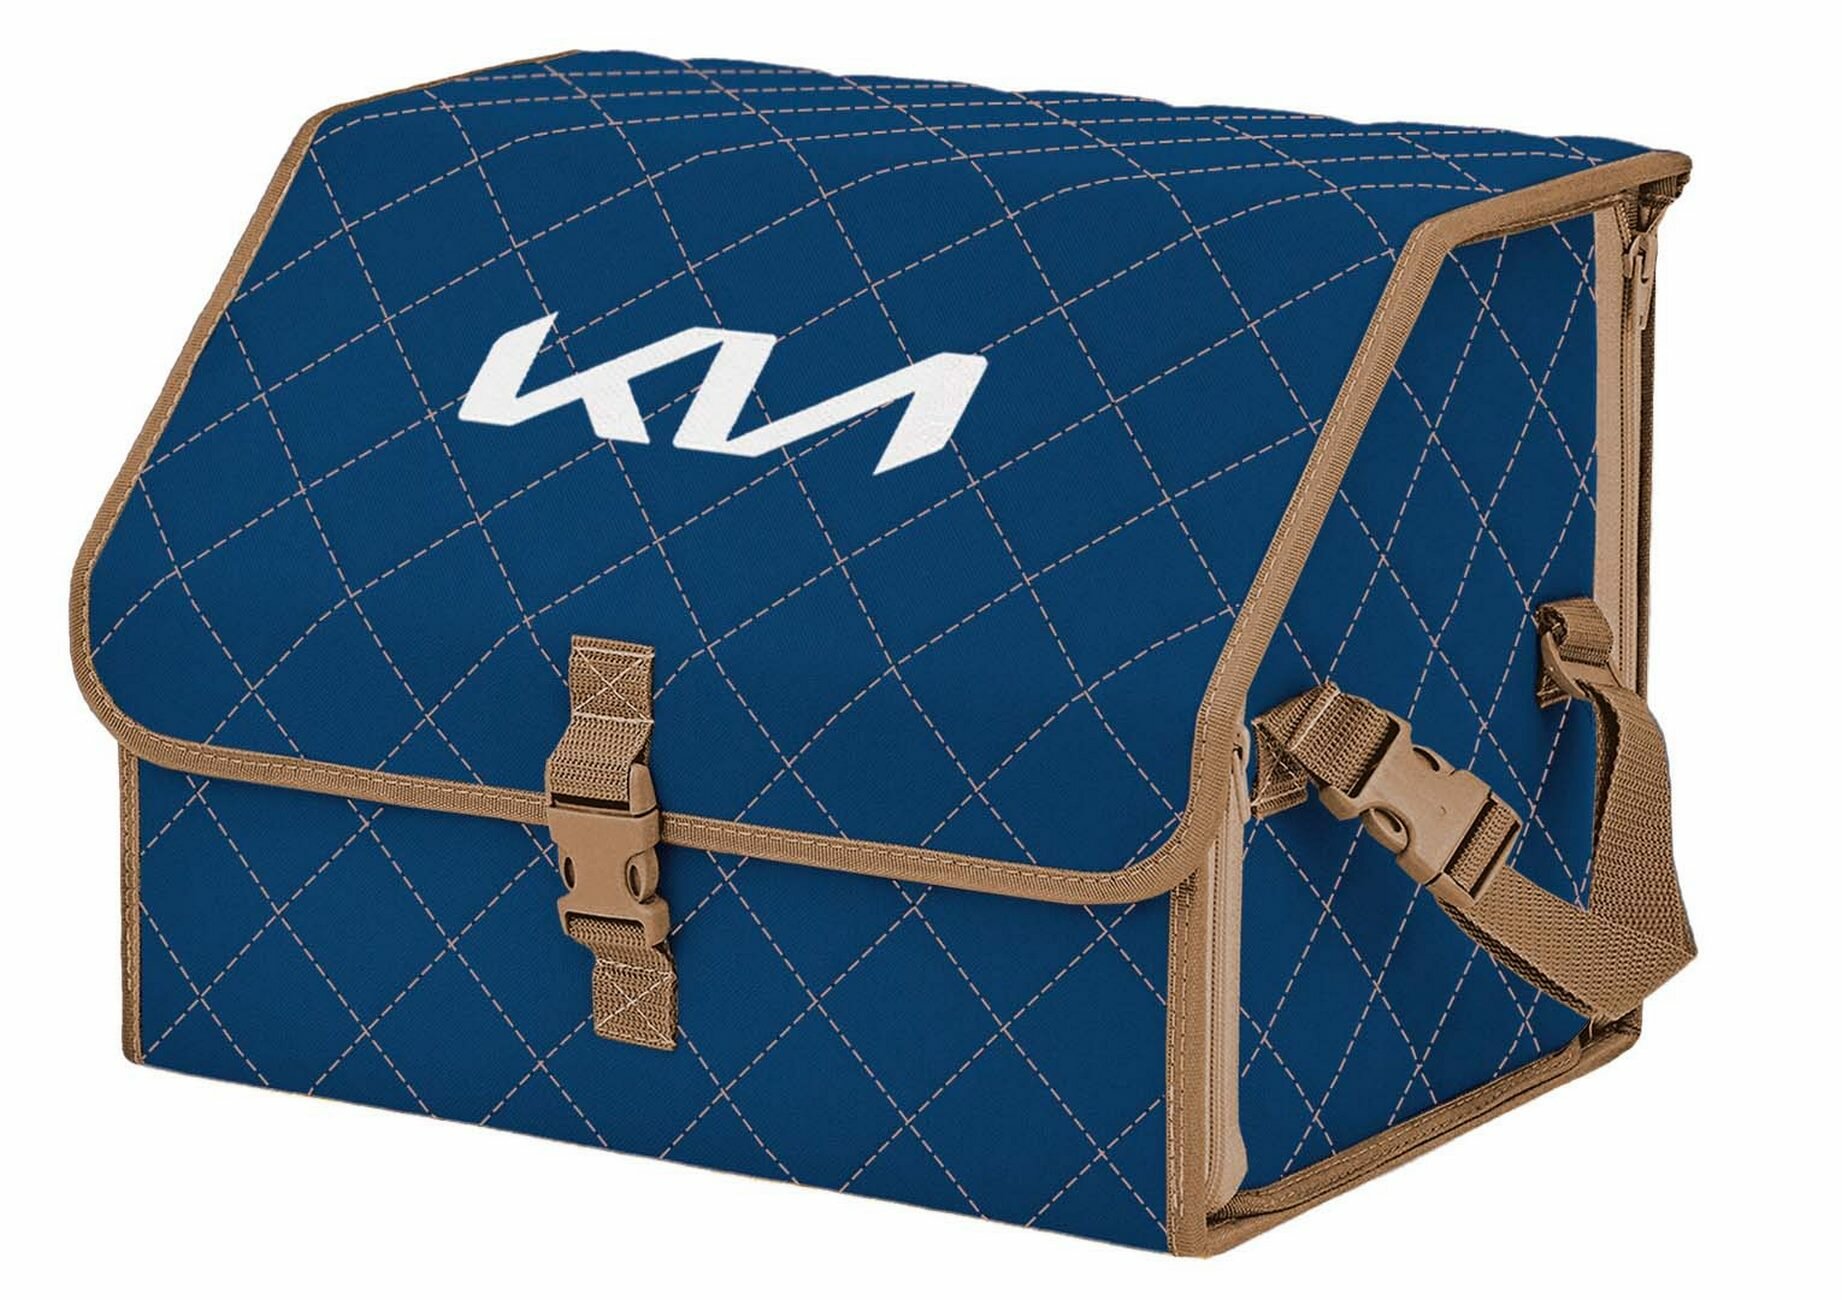 Органайзер-саквояж в багажник "Союз" (размер M). Цвет: синий с бежевой прострочкой Ромб и вышивкой KIA (КИА).